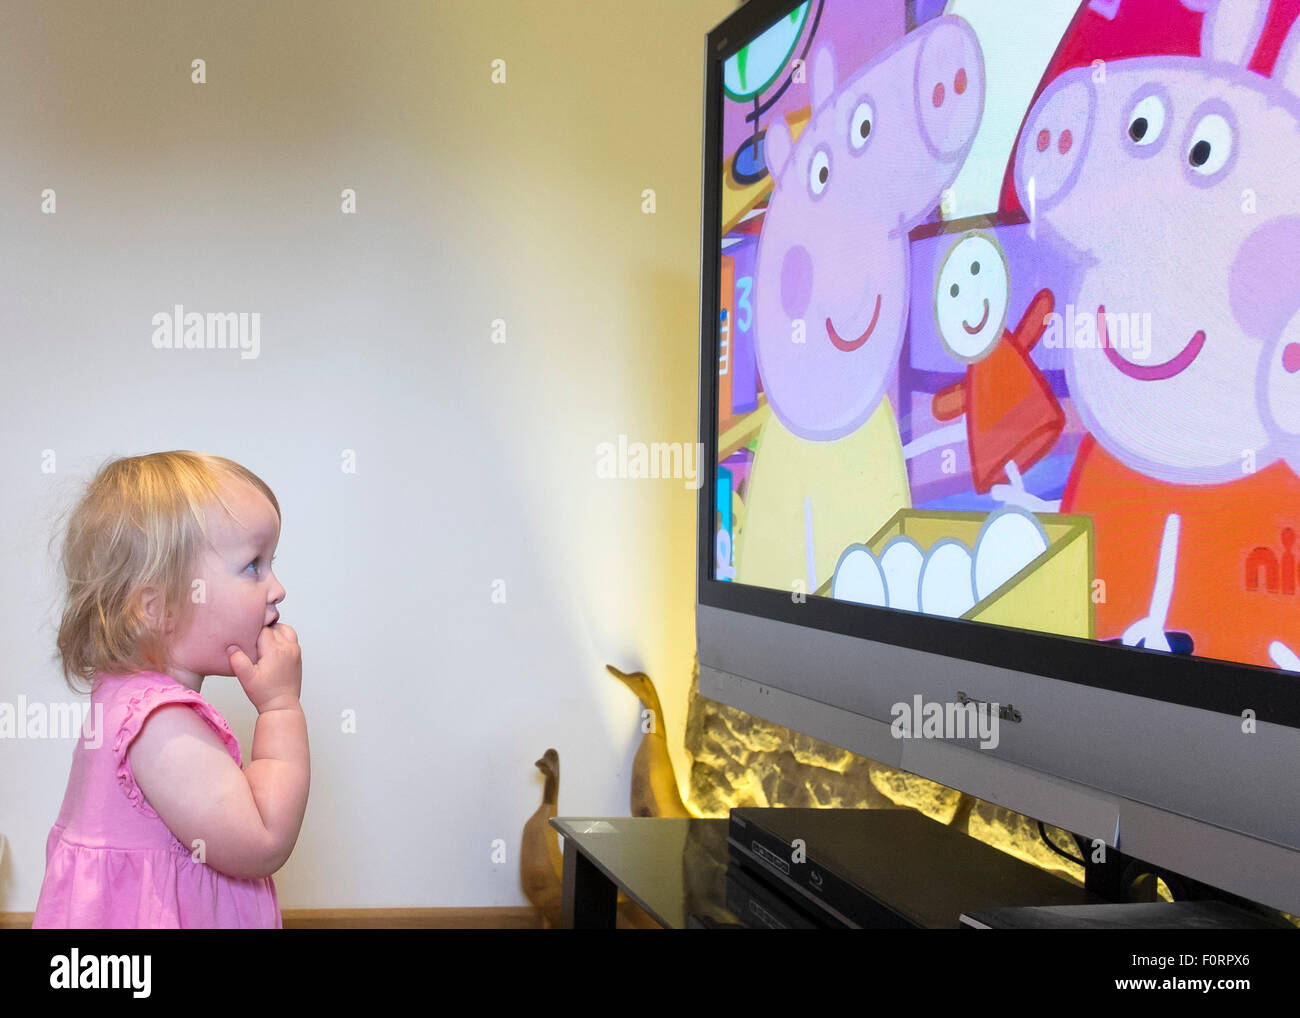 La télévision pour enfants montres d'un tout-petit. Banque D'Images